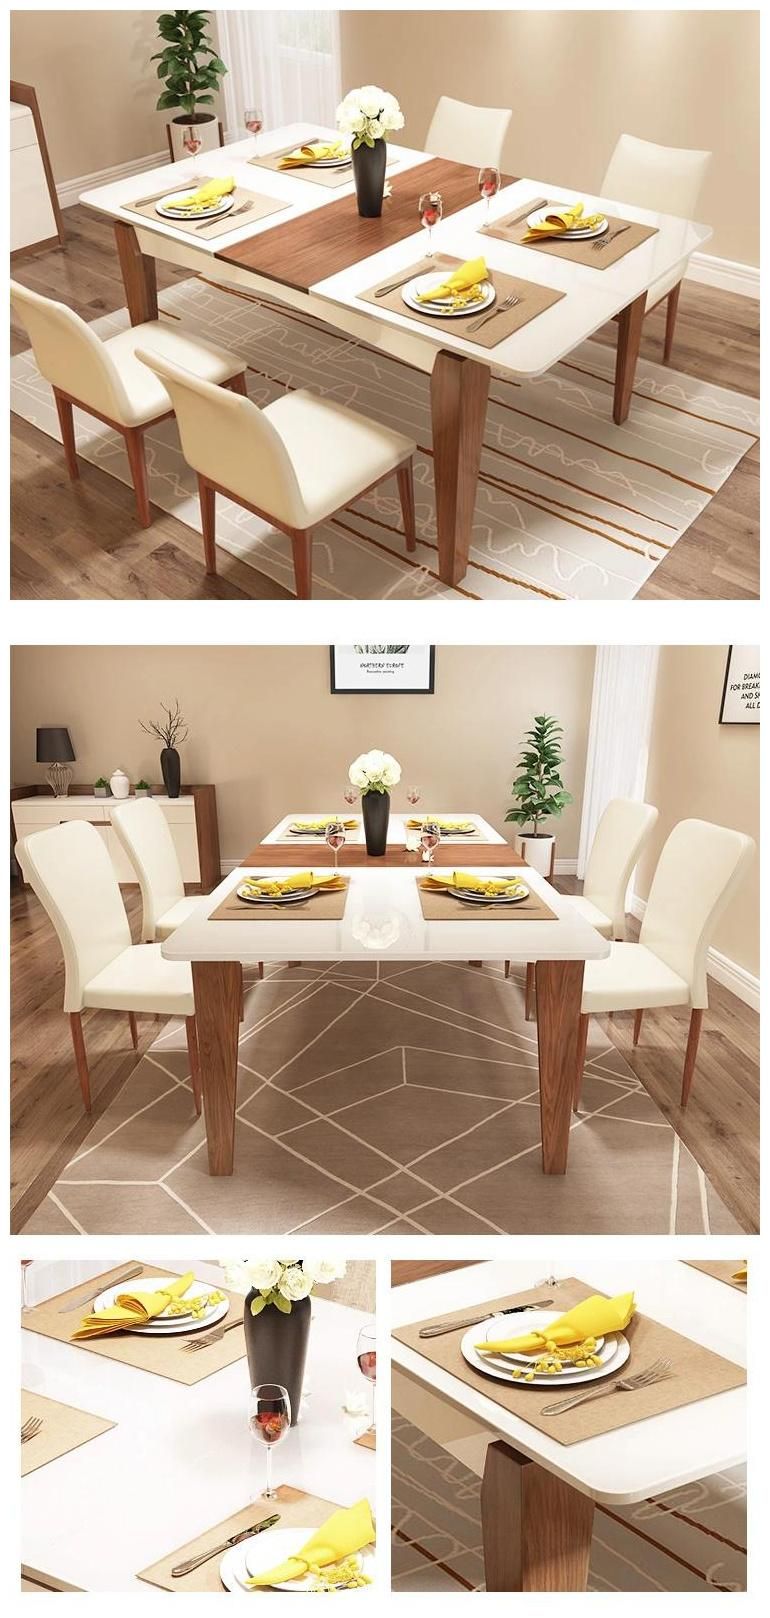 Hot Selling Modern Design Elegant Simple Rectangular Dining Room Furniture Sets